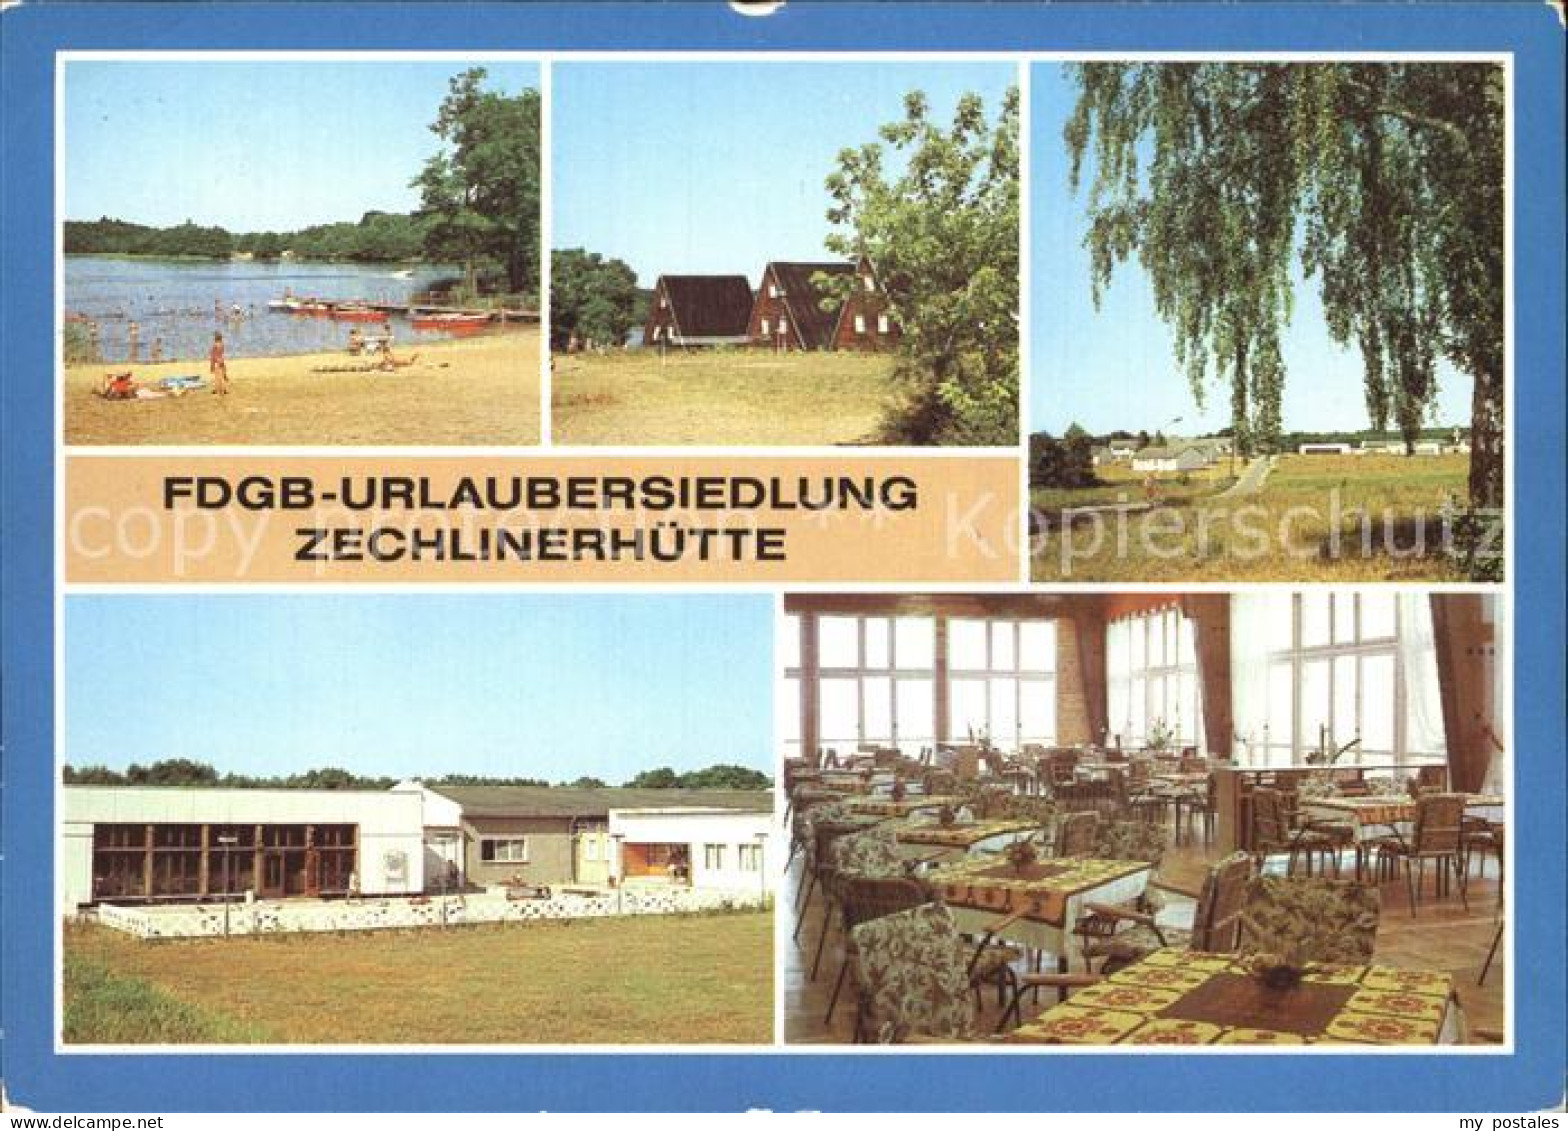 72370728 Zechlinerhuette FDGB Urlaubersiedlung Badestelle Bootssteg Tietzowsee F - Zechlinerhütte